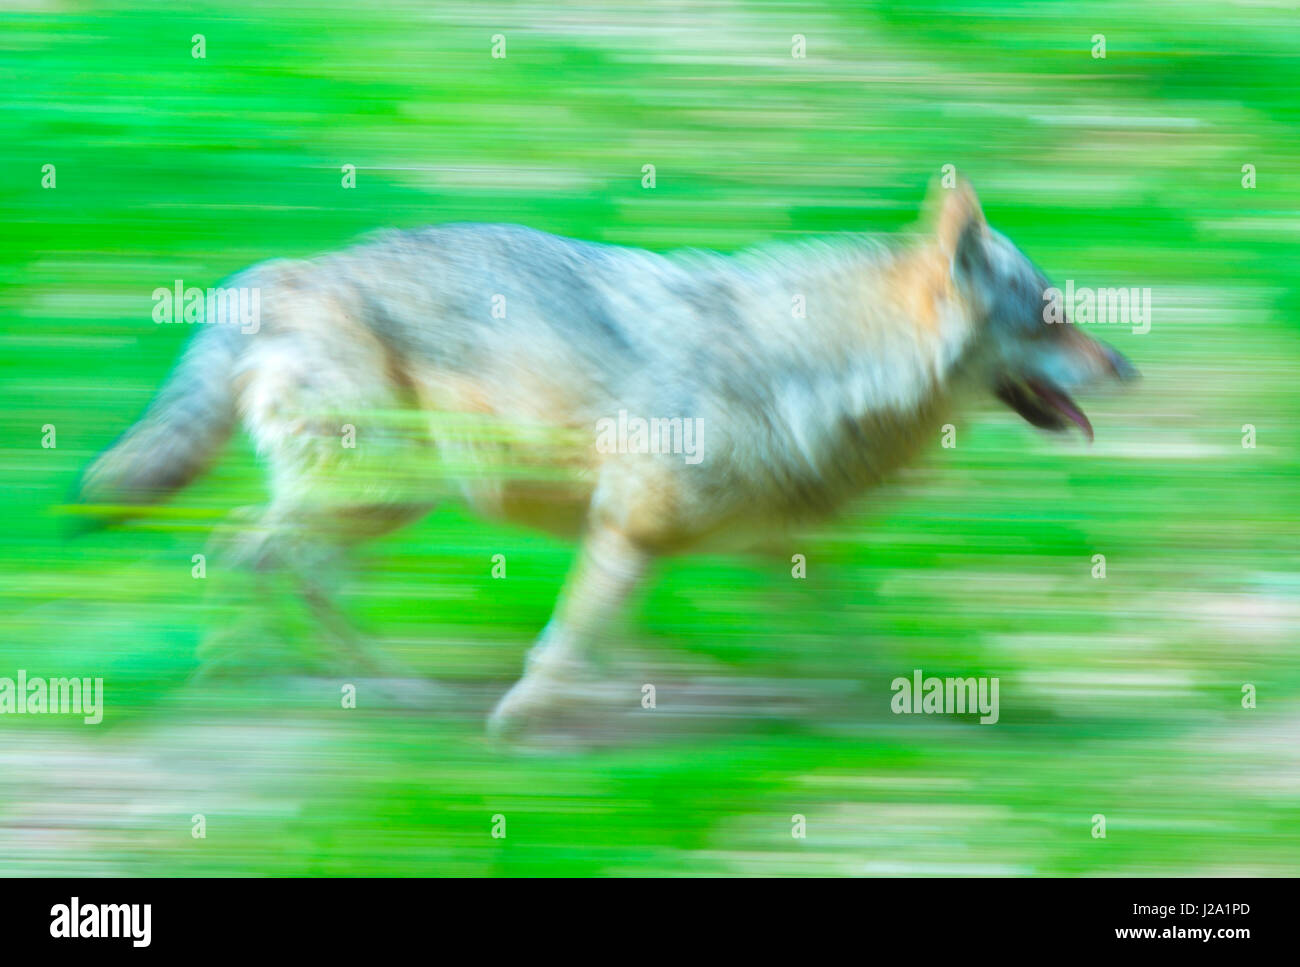 Loup européen in motion Banque D'Images